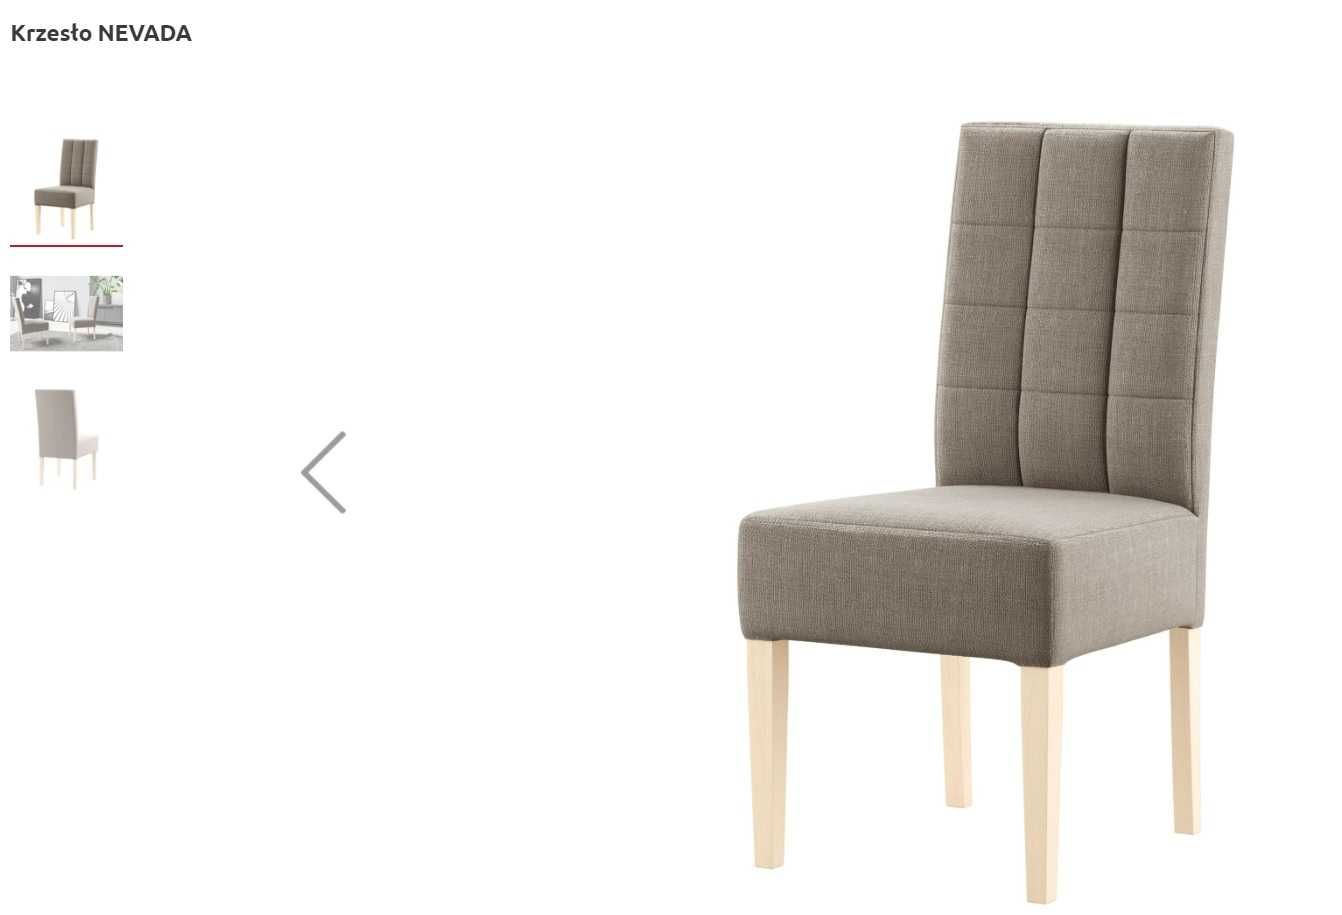 krzesło NEVADA agata meble x 6 sztuk